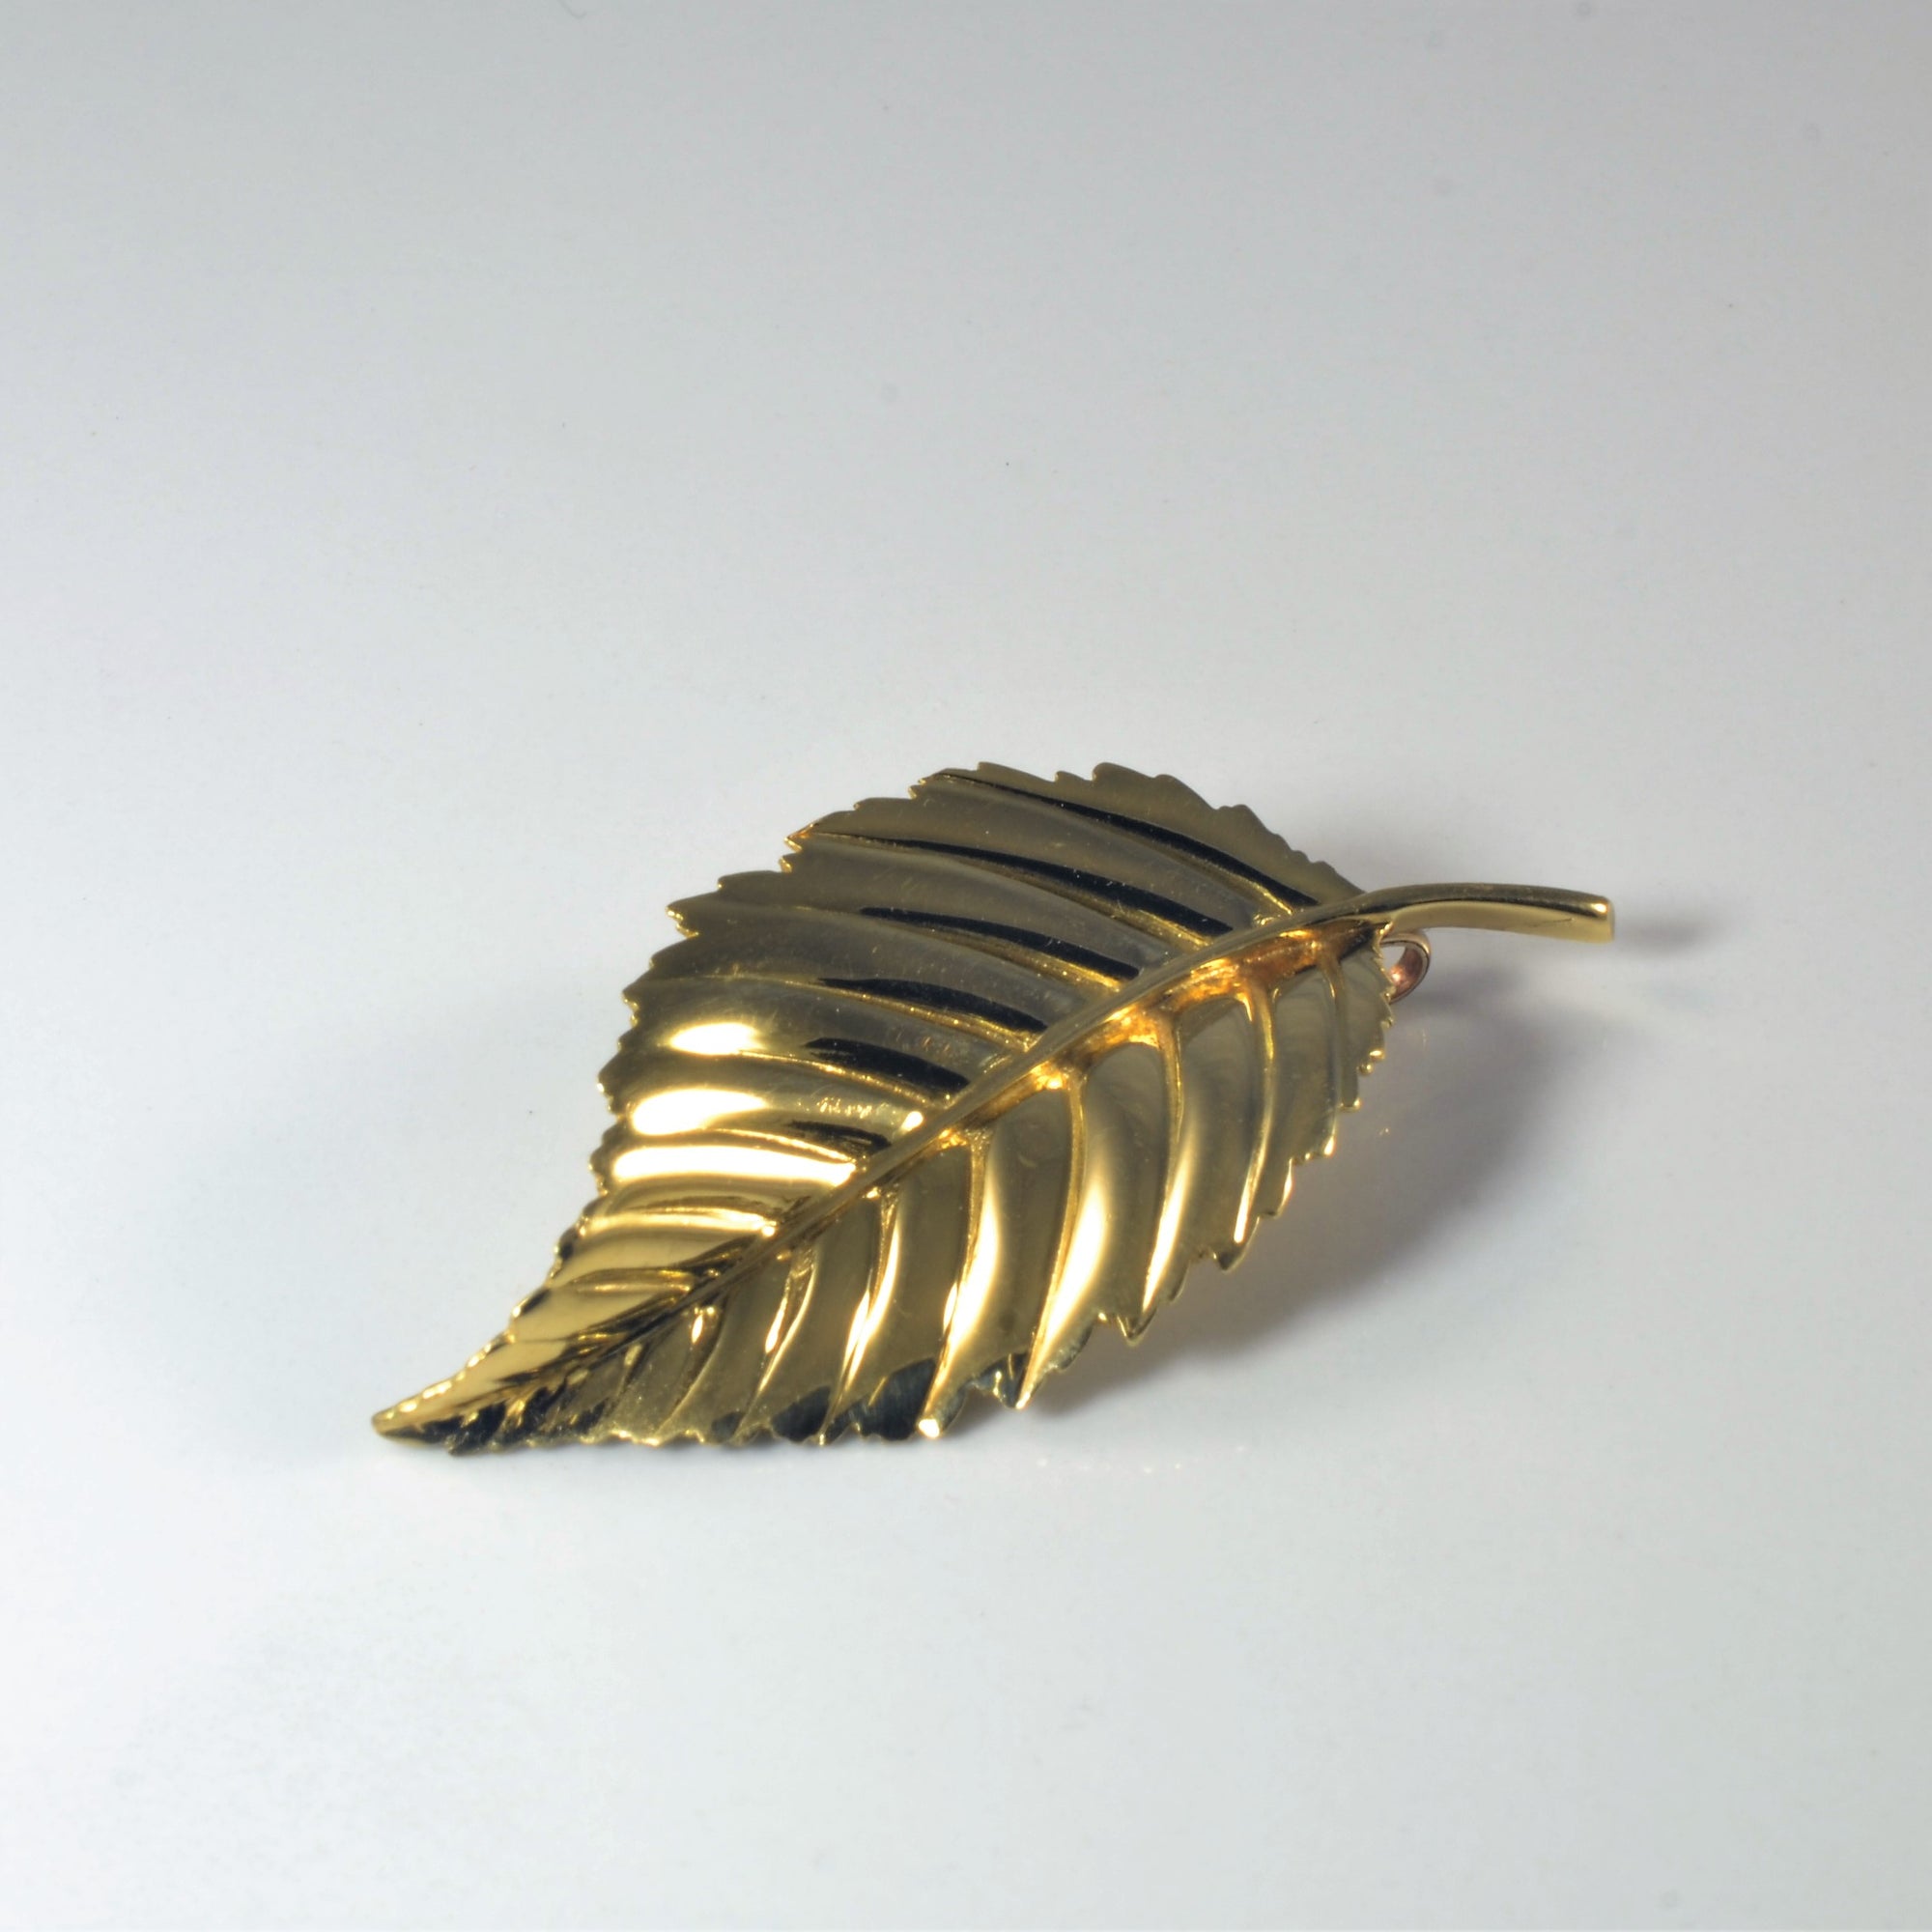 1980s Golden Leaf Pendant |